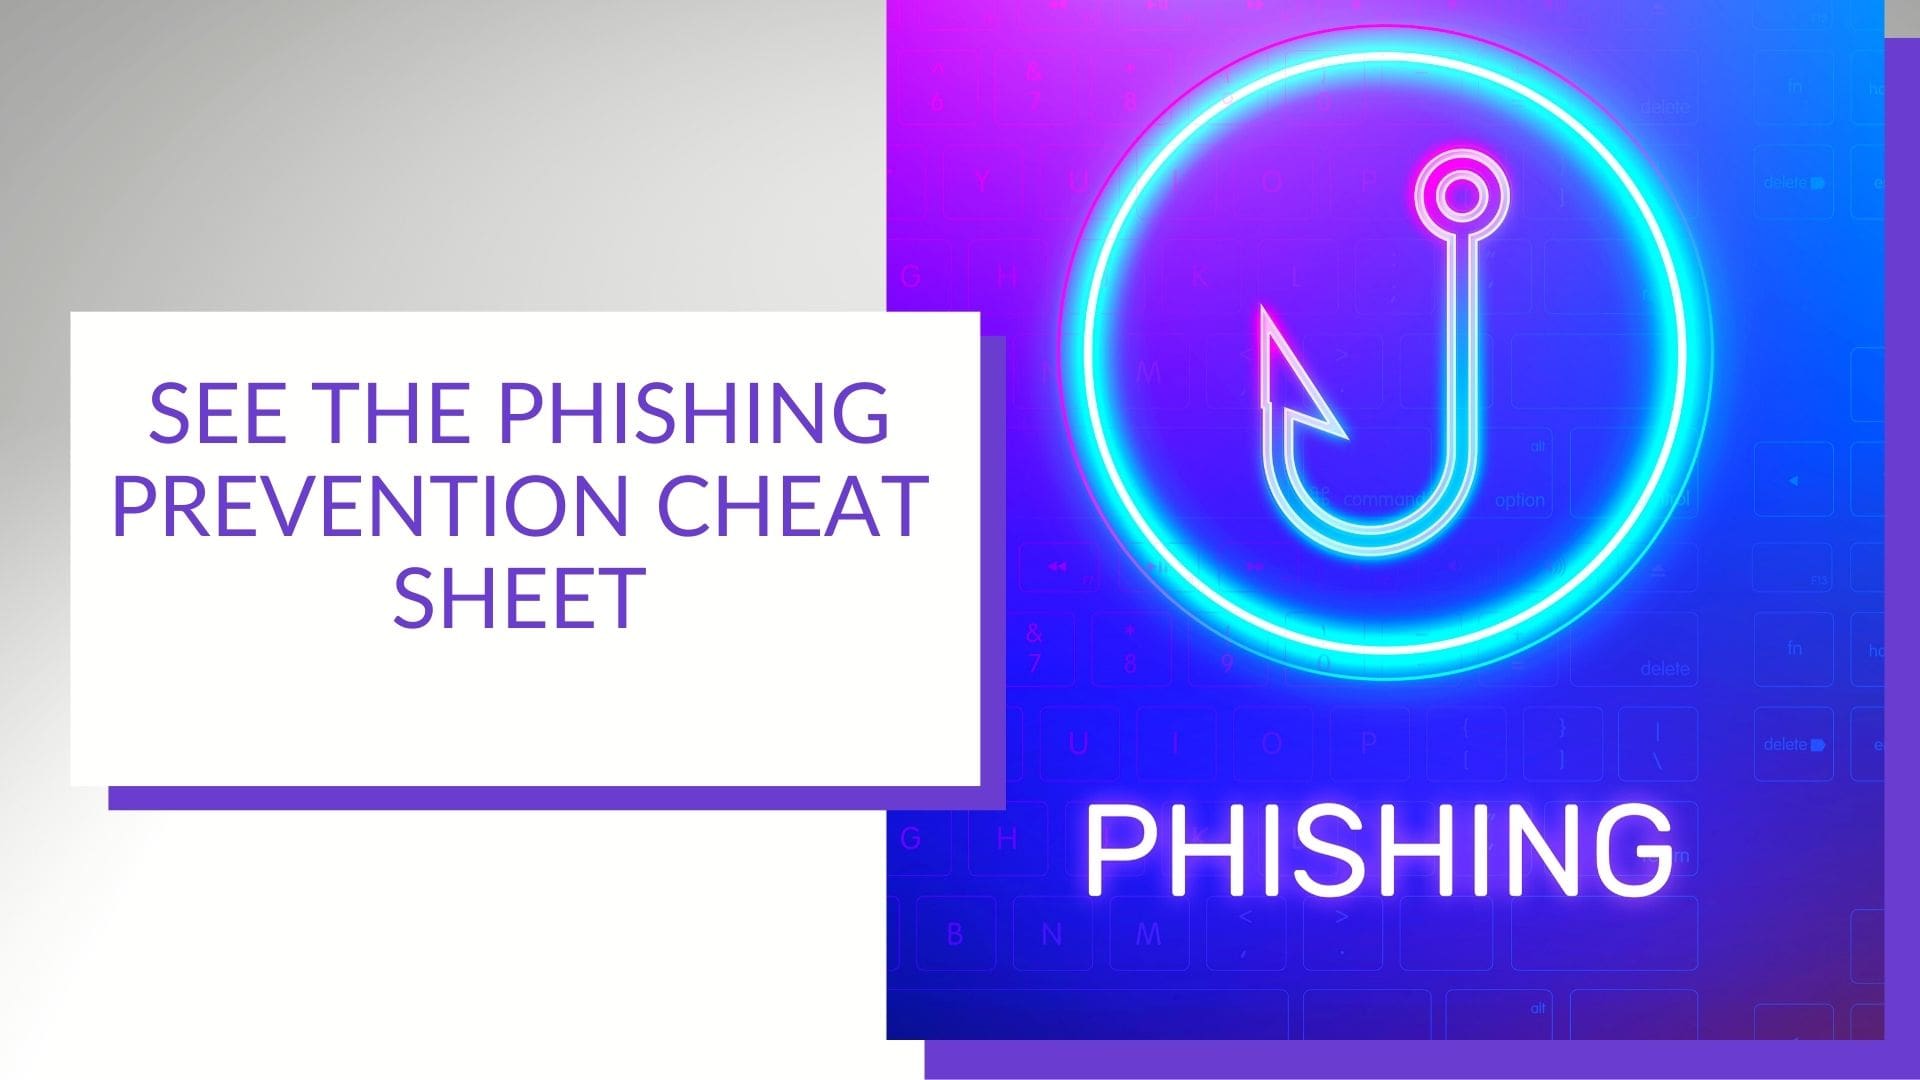 phishing prevention tips image